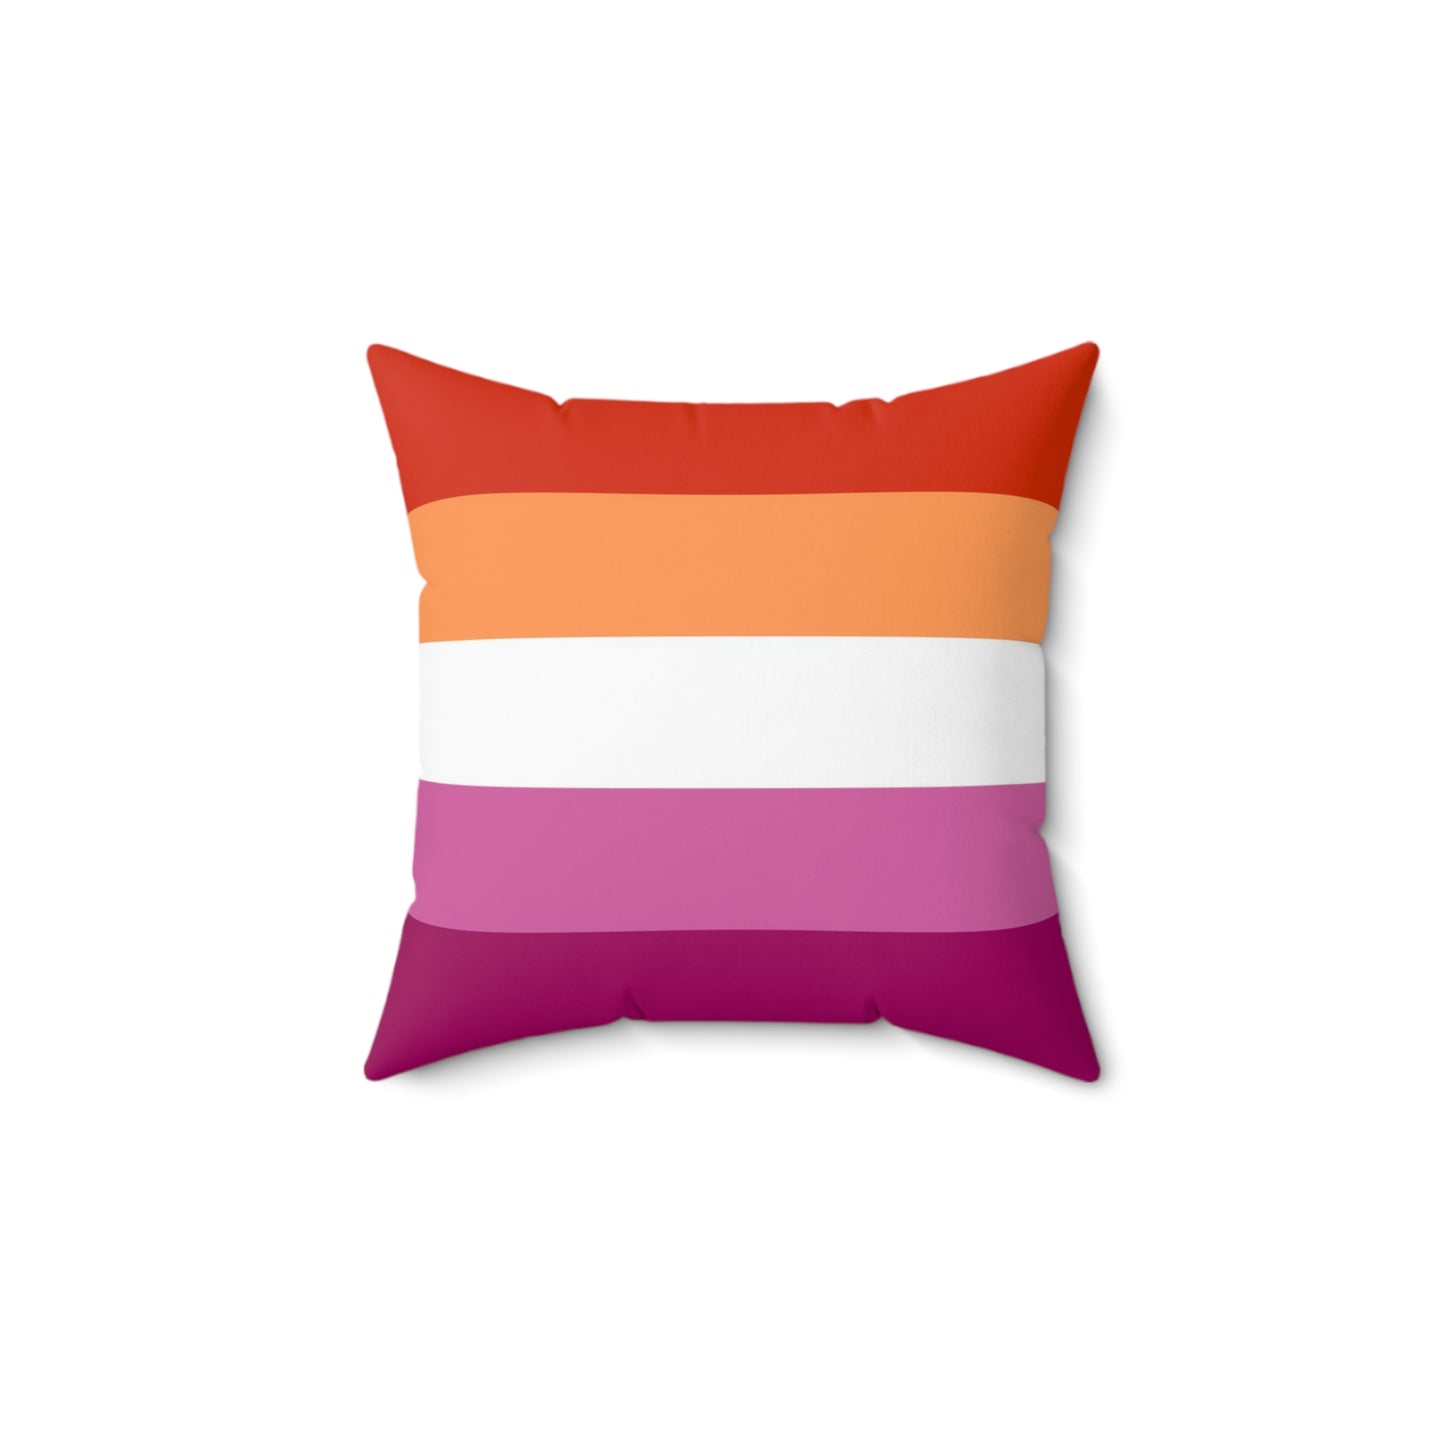 Throw Pillow | Lesbian Pride Flag 5 Stripes | Orange White Pink | 14x14